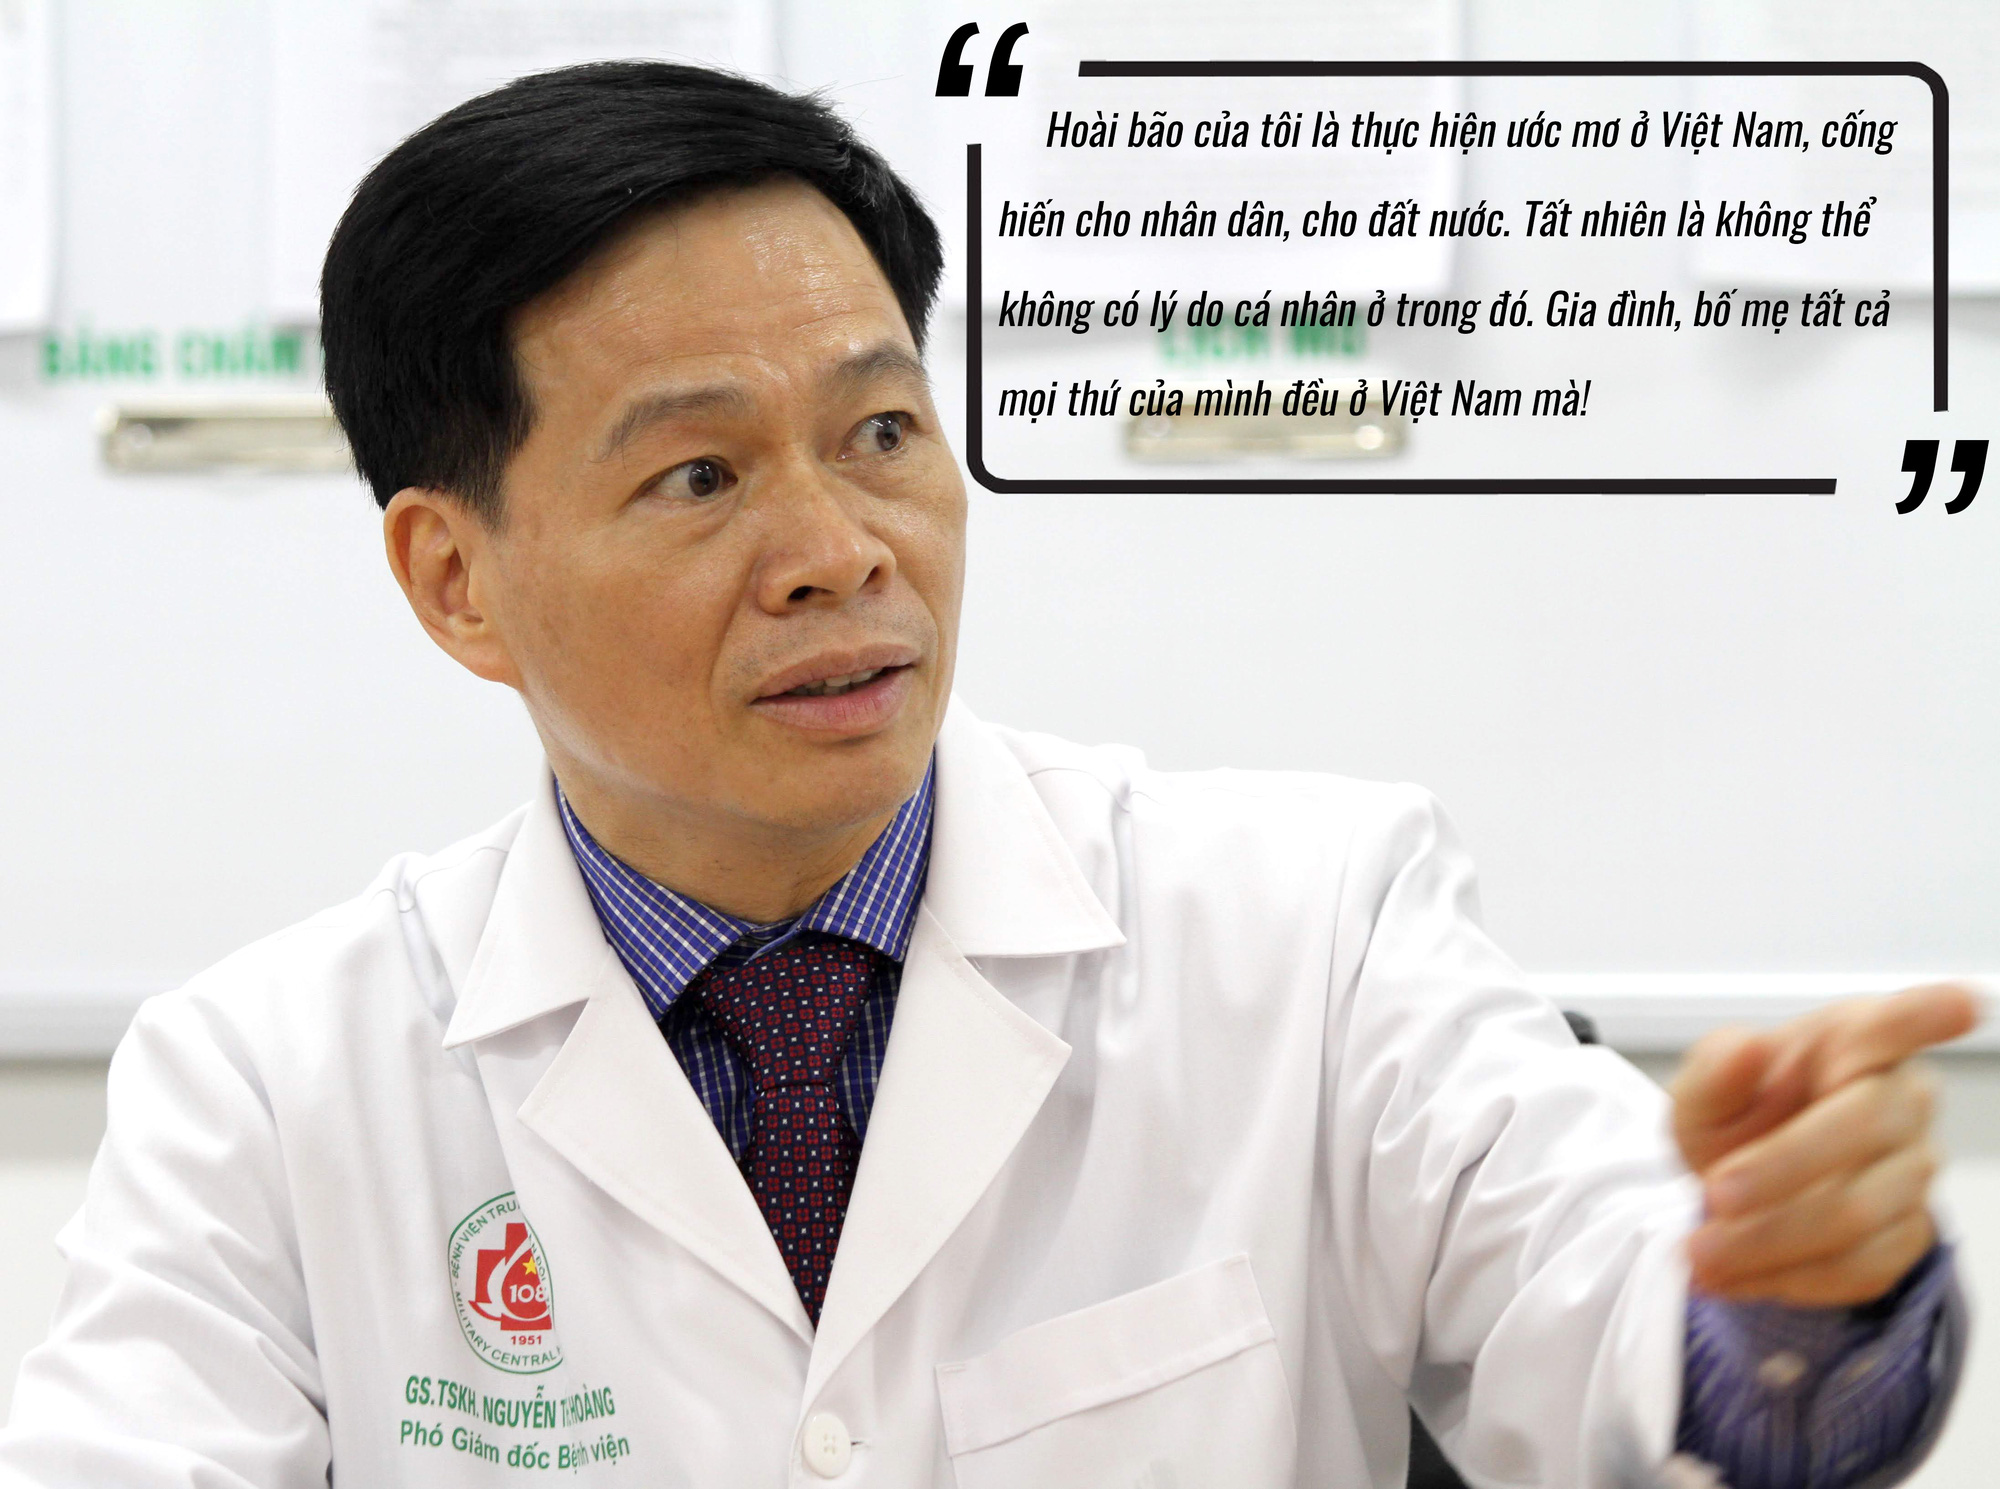 Kỳ tích bác sĩ Việt: Chuyện chưa kể về ca ghép chi đầu tiên trên thế giới từ người cho còn sống - Ảnh 13.